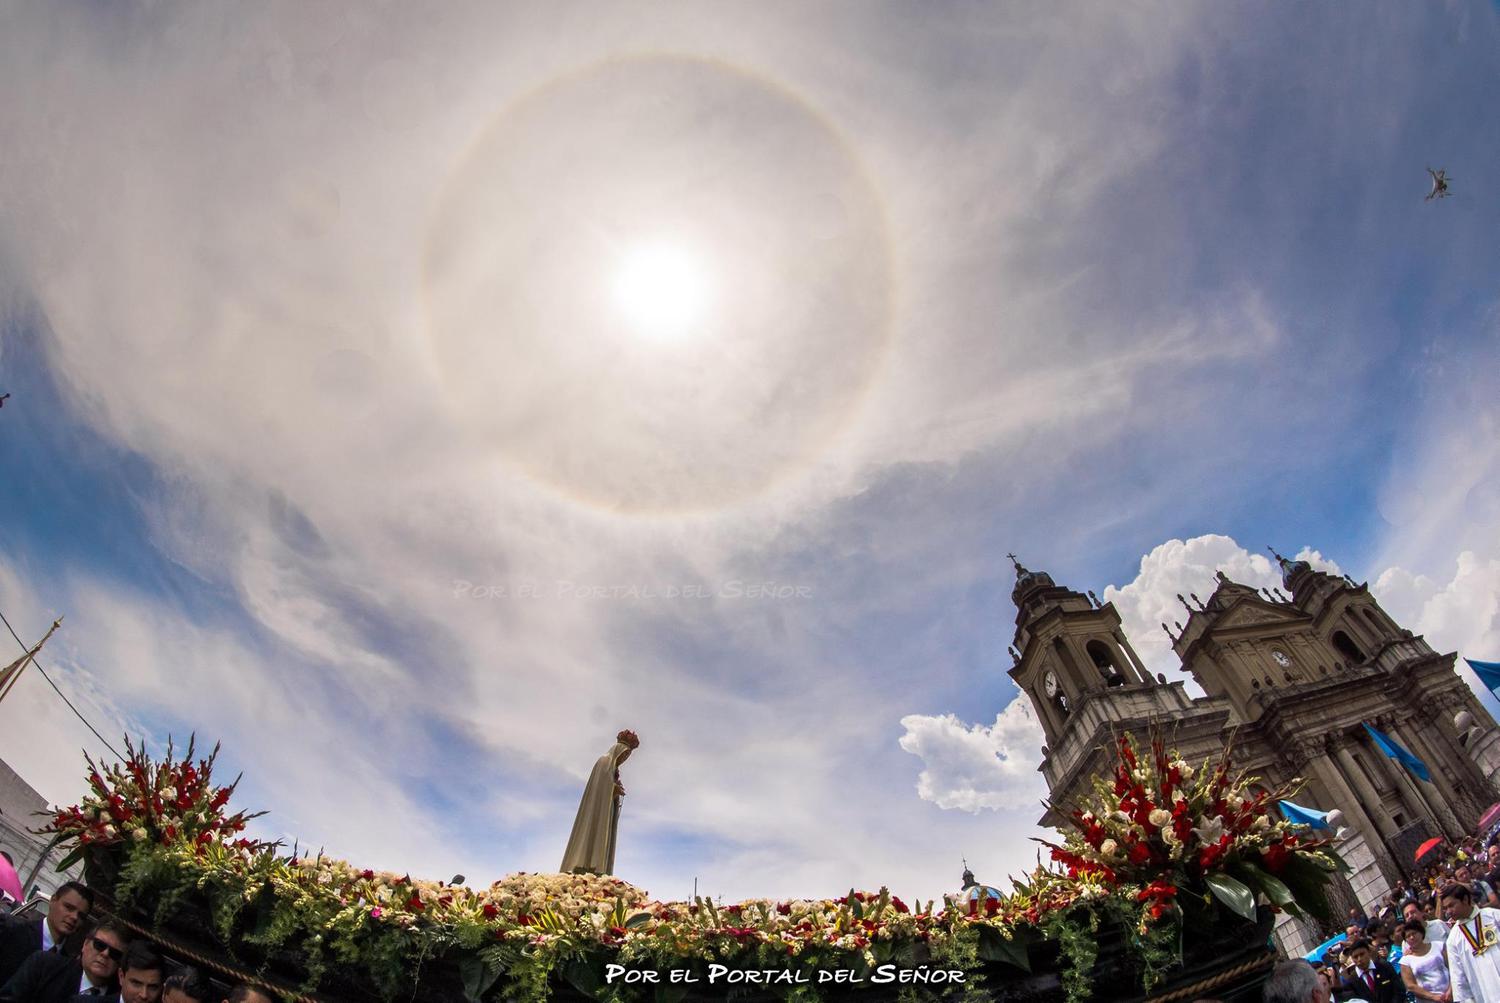 Las cosas que sucedieron en la procesión del centenario de la Virgen de Fátima